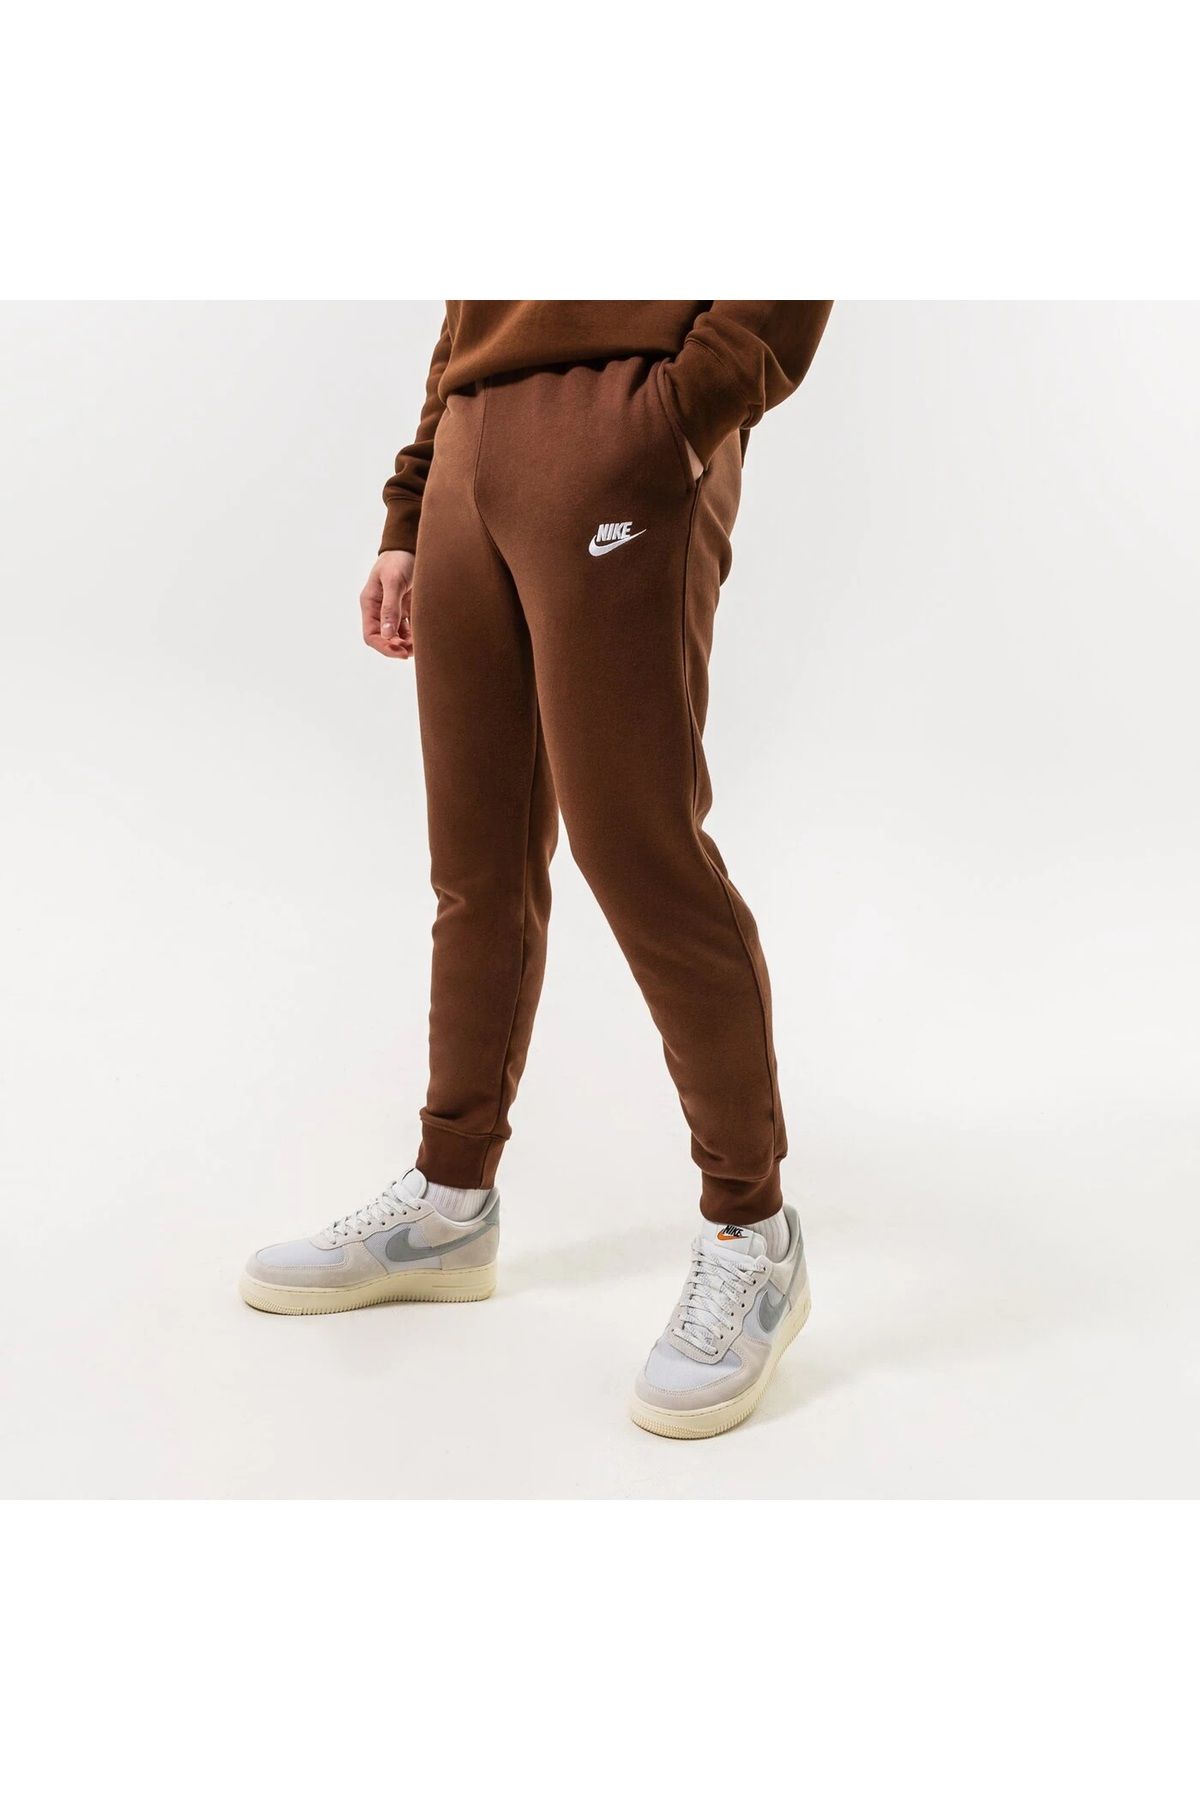 Nike Sweatpants - Brown - High Waist - Trendyol